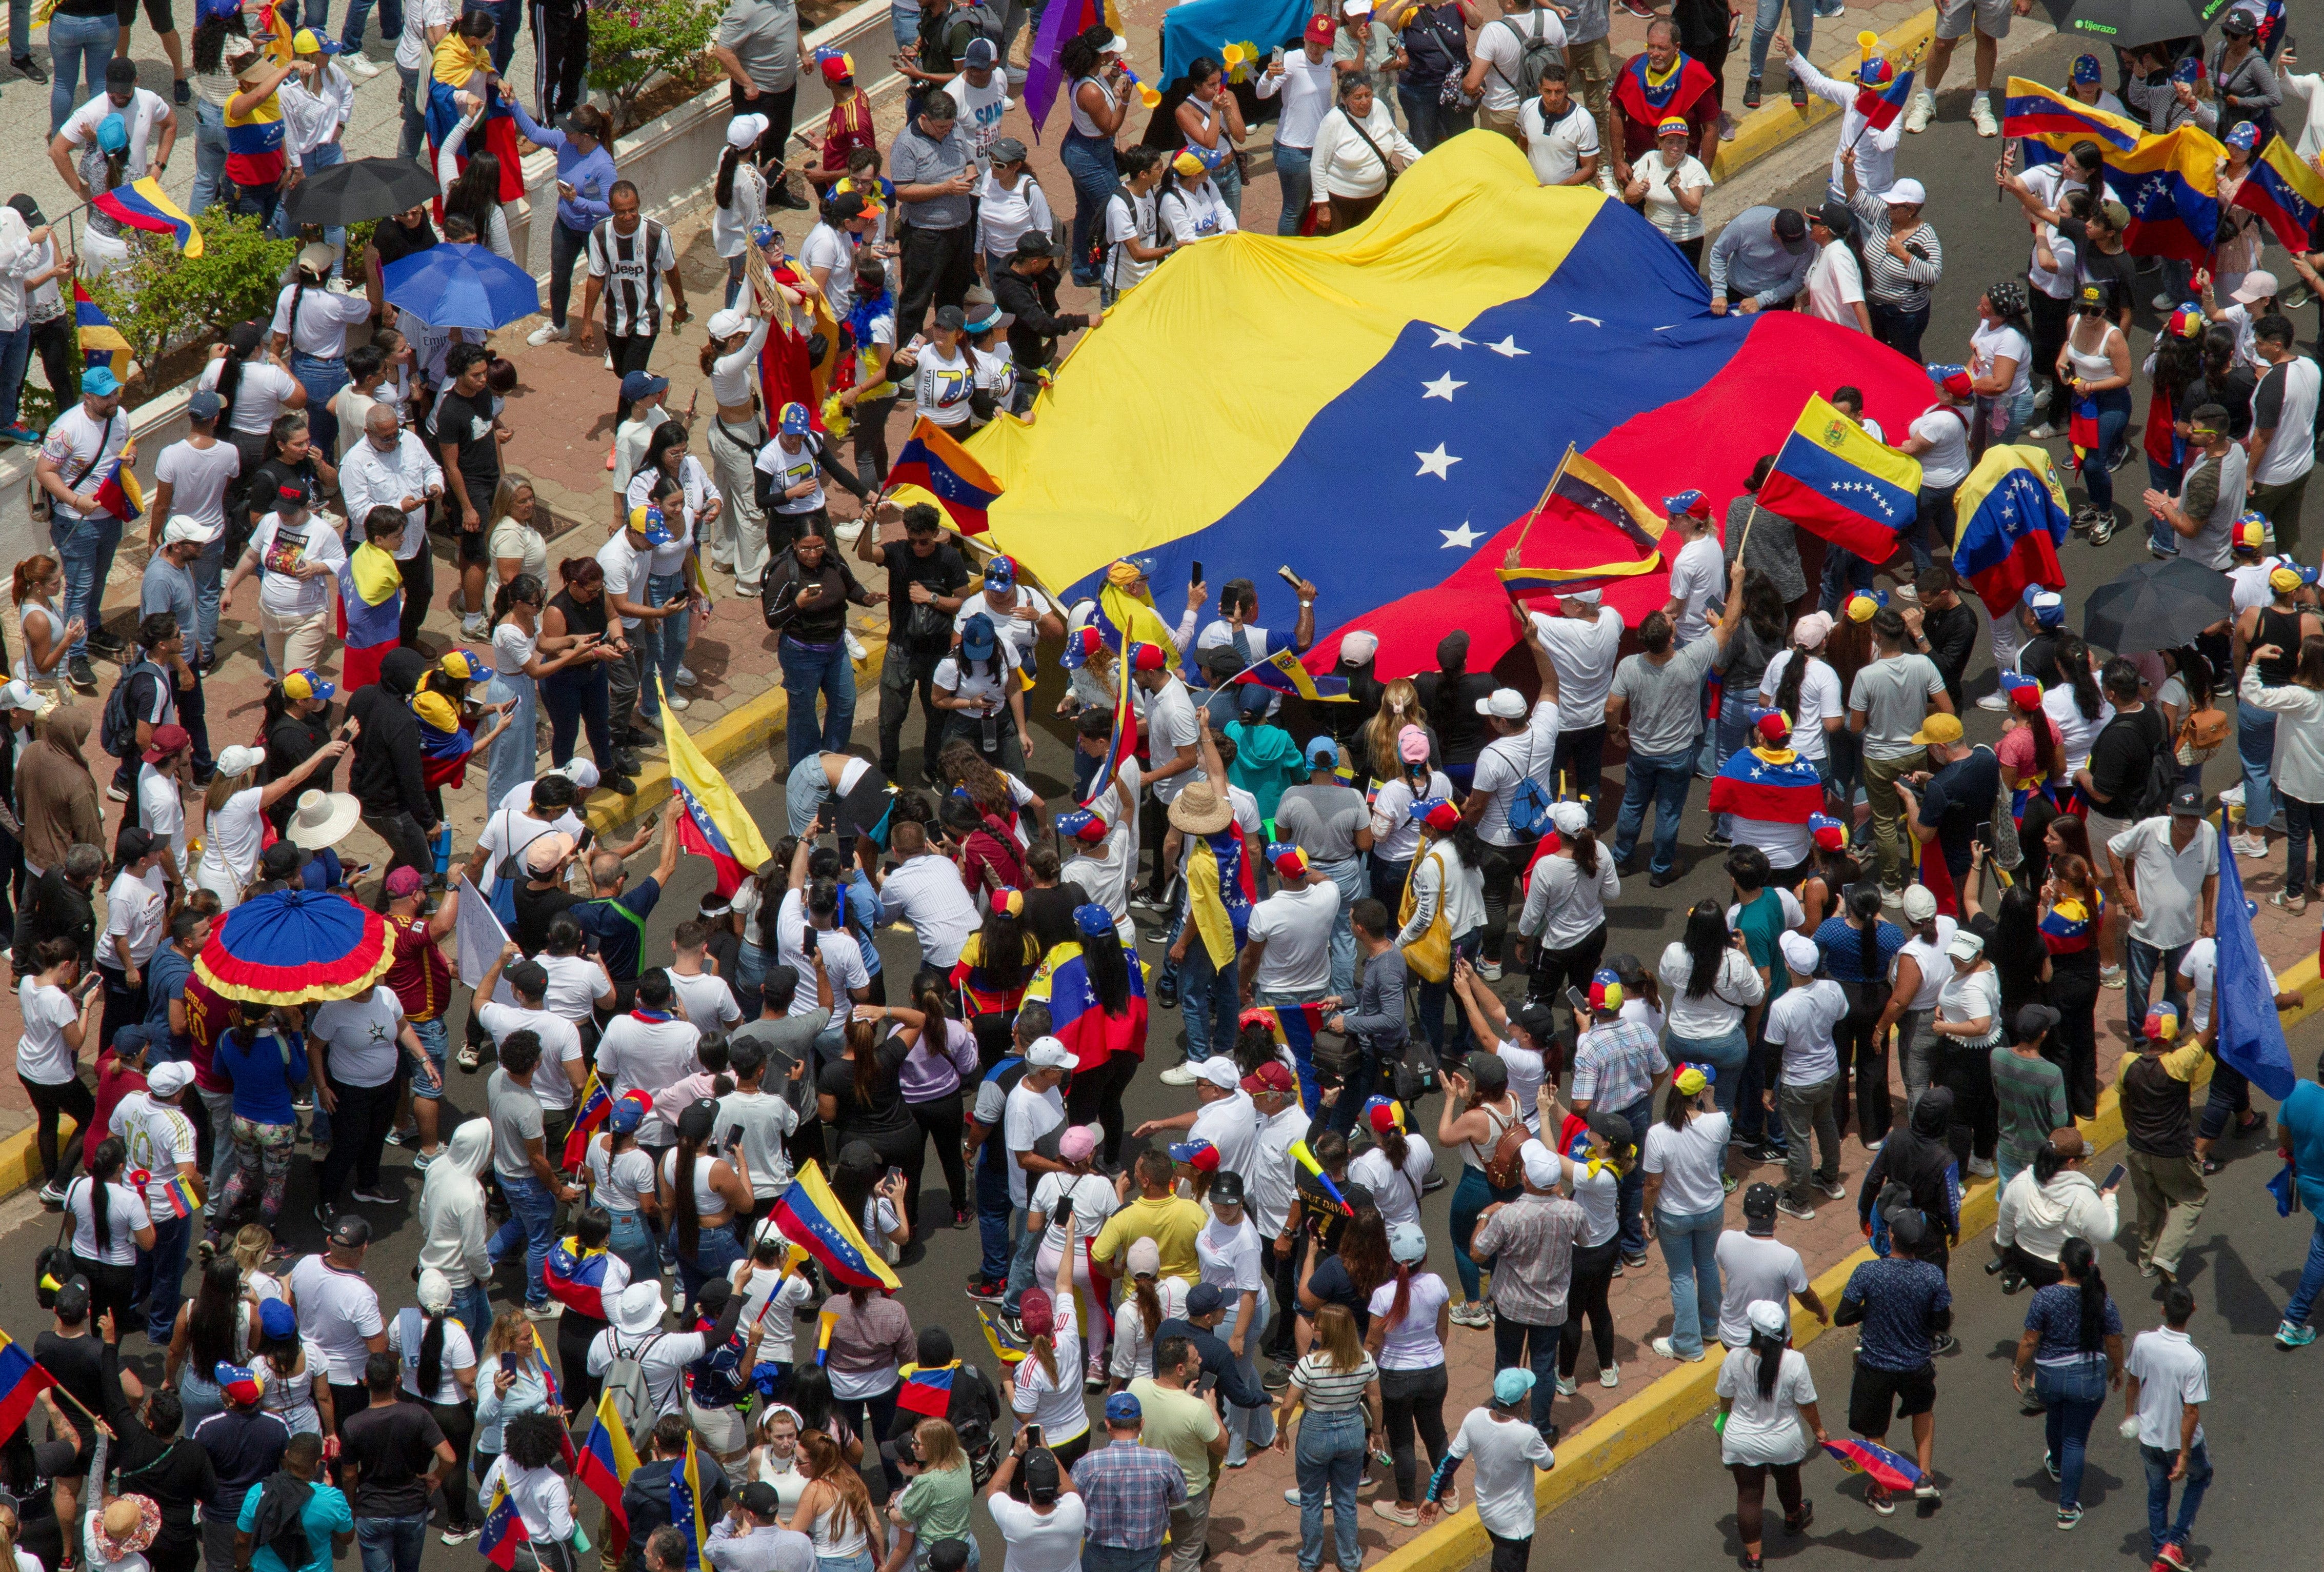 False claim US invaded Venezuela | Fact check